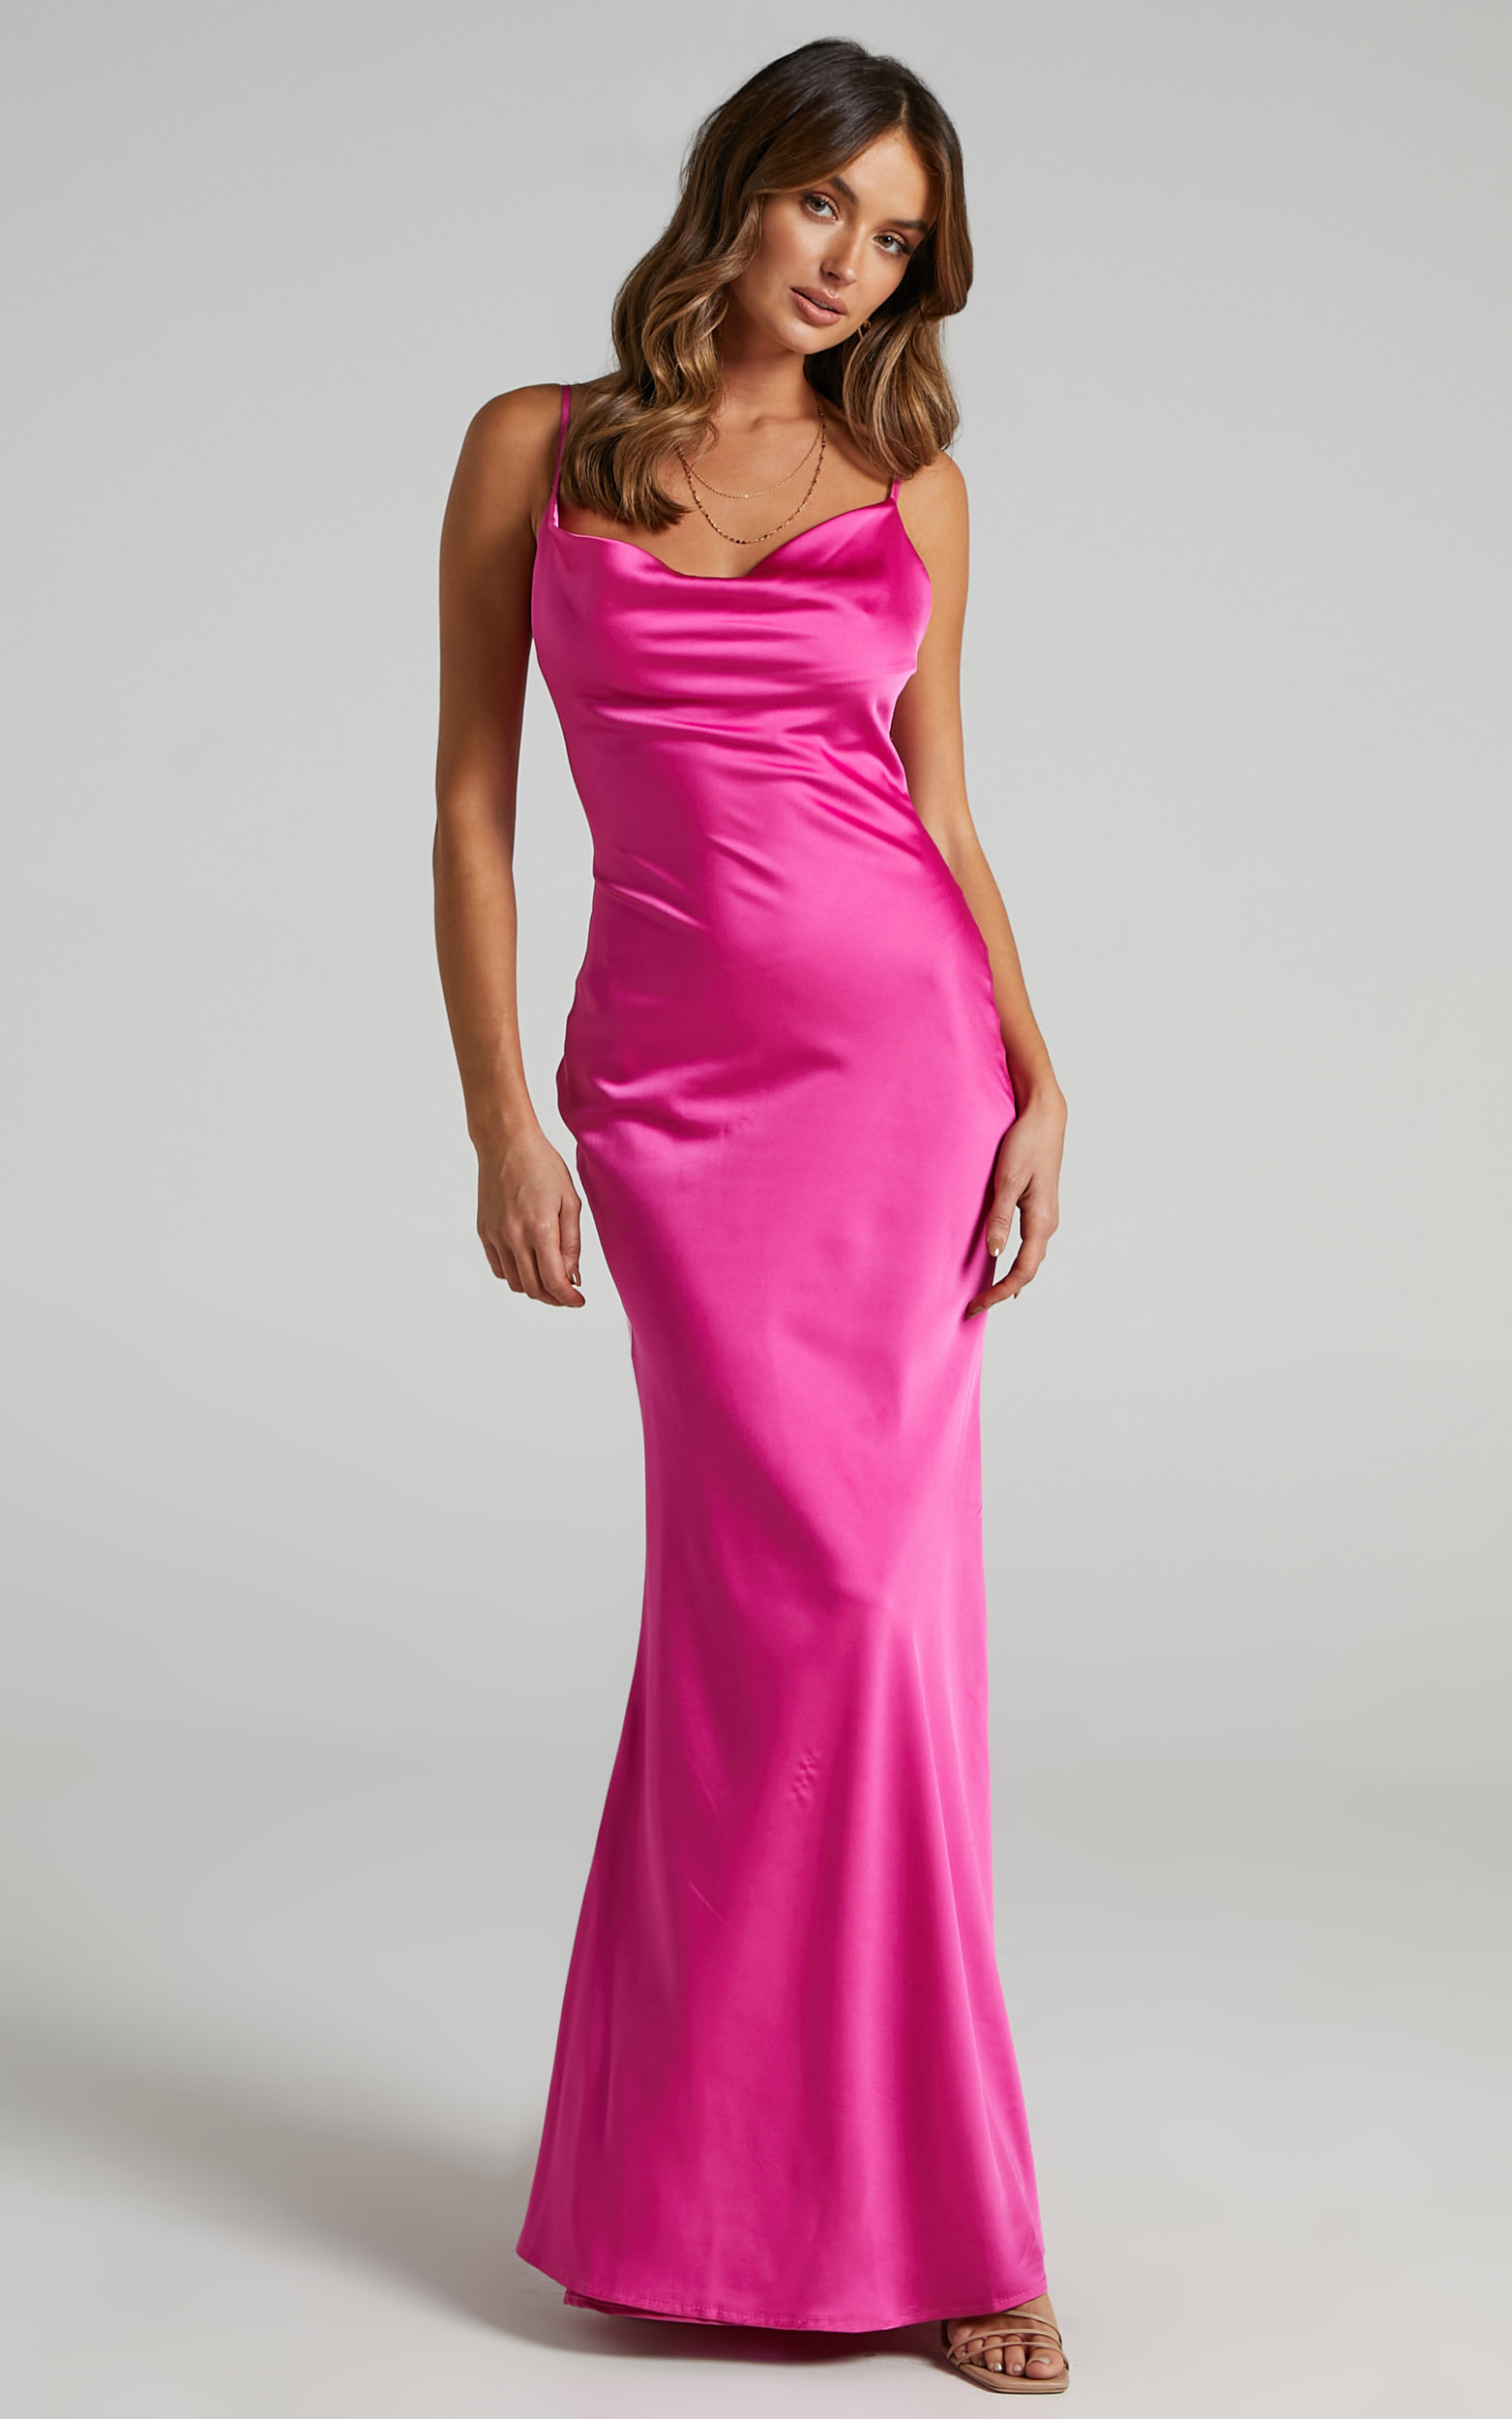 Lunaria Cowl Mermaid Maxi Slip Dress in Hot Pink Satin - 06, PNK1, hi-res image number null